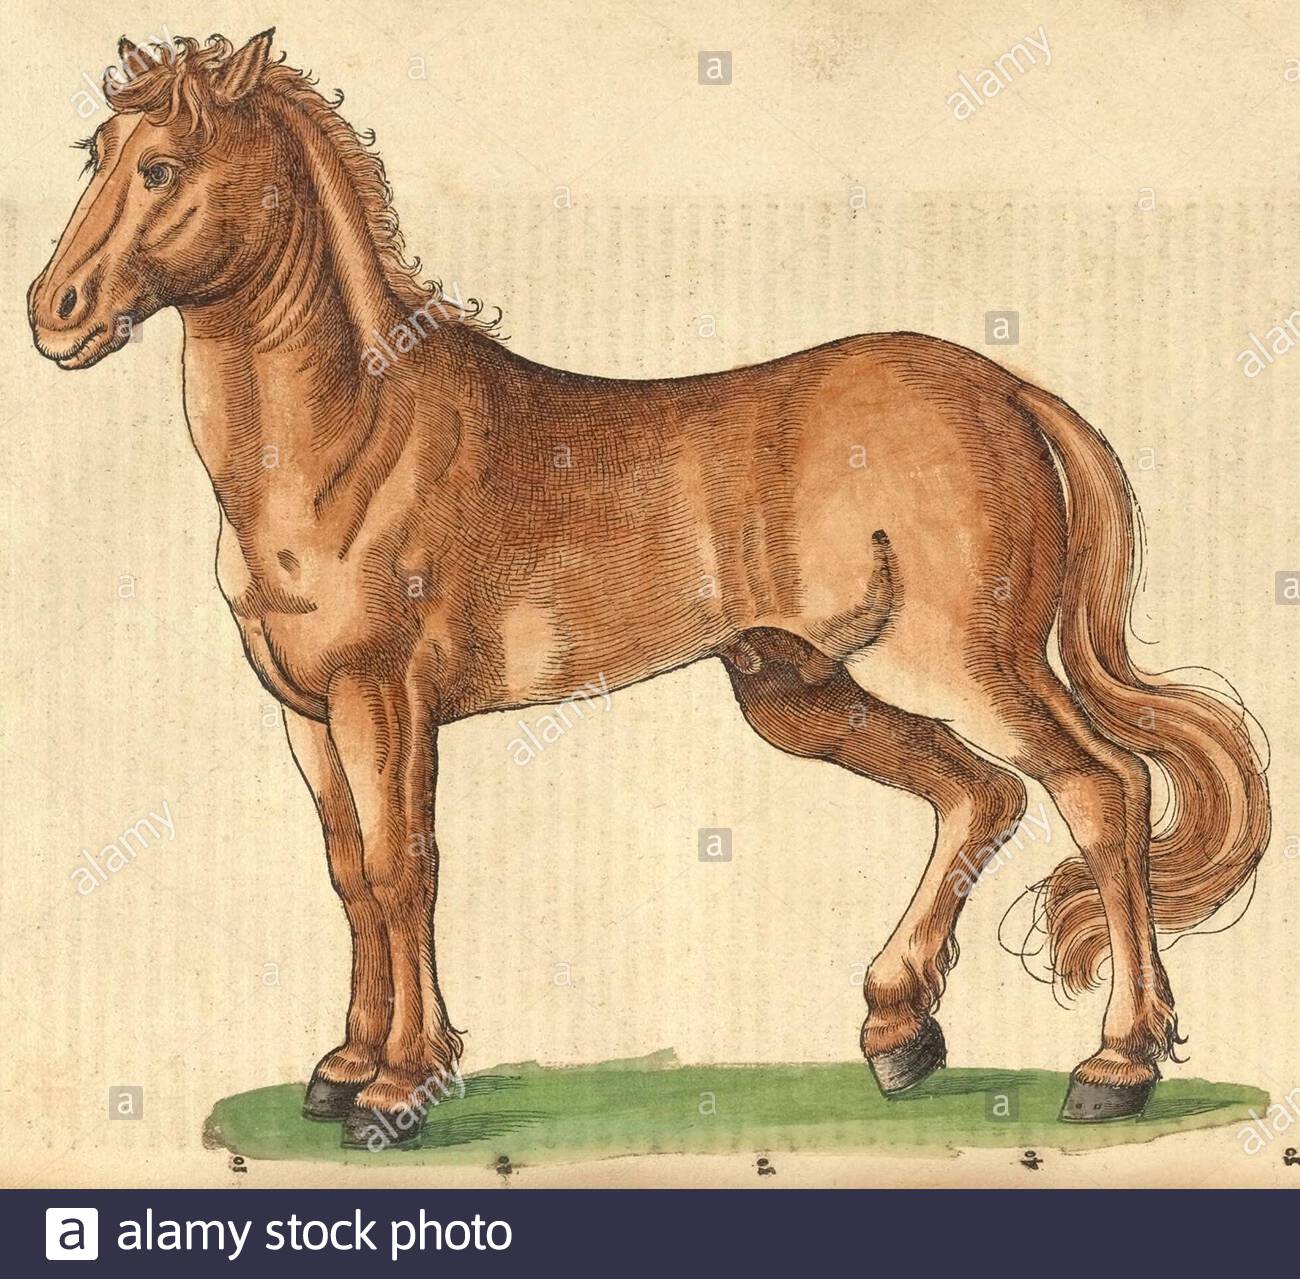 Horse (Equus ferus caballus), vintage illustration published in 1551. Conrad Gessner. Stock Photo